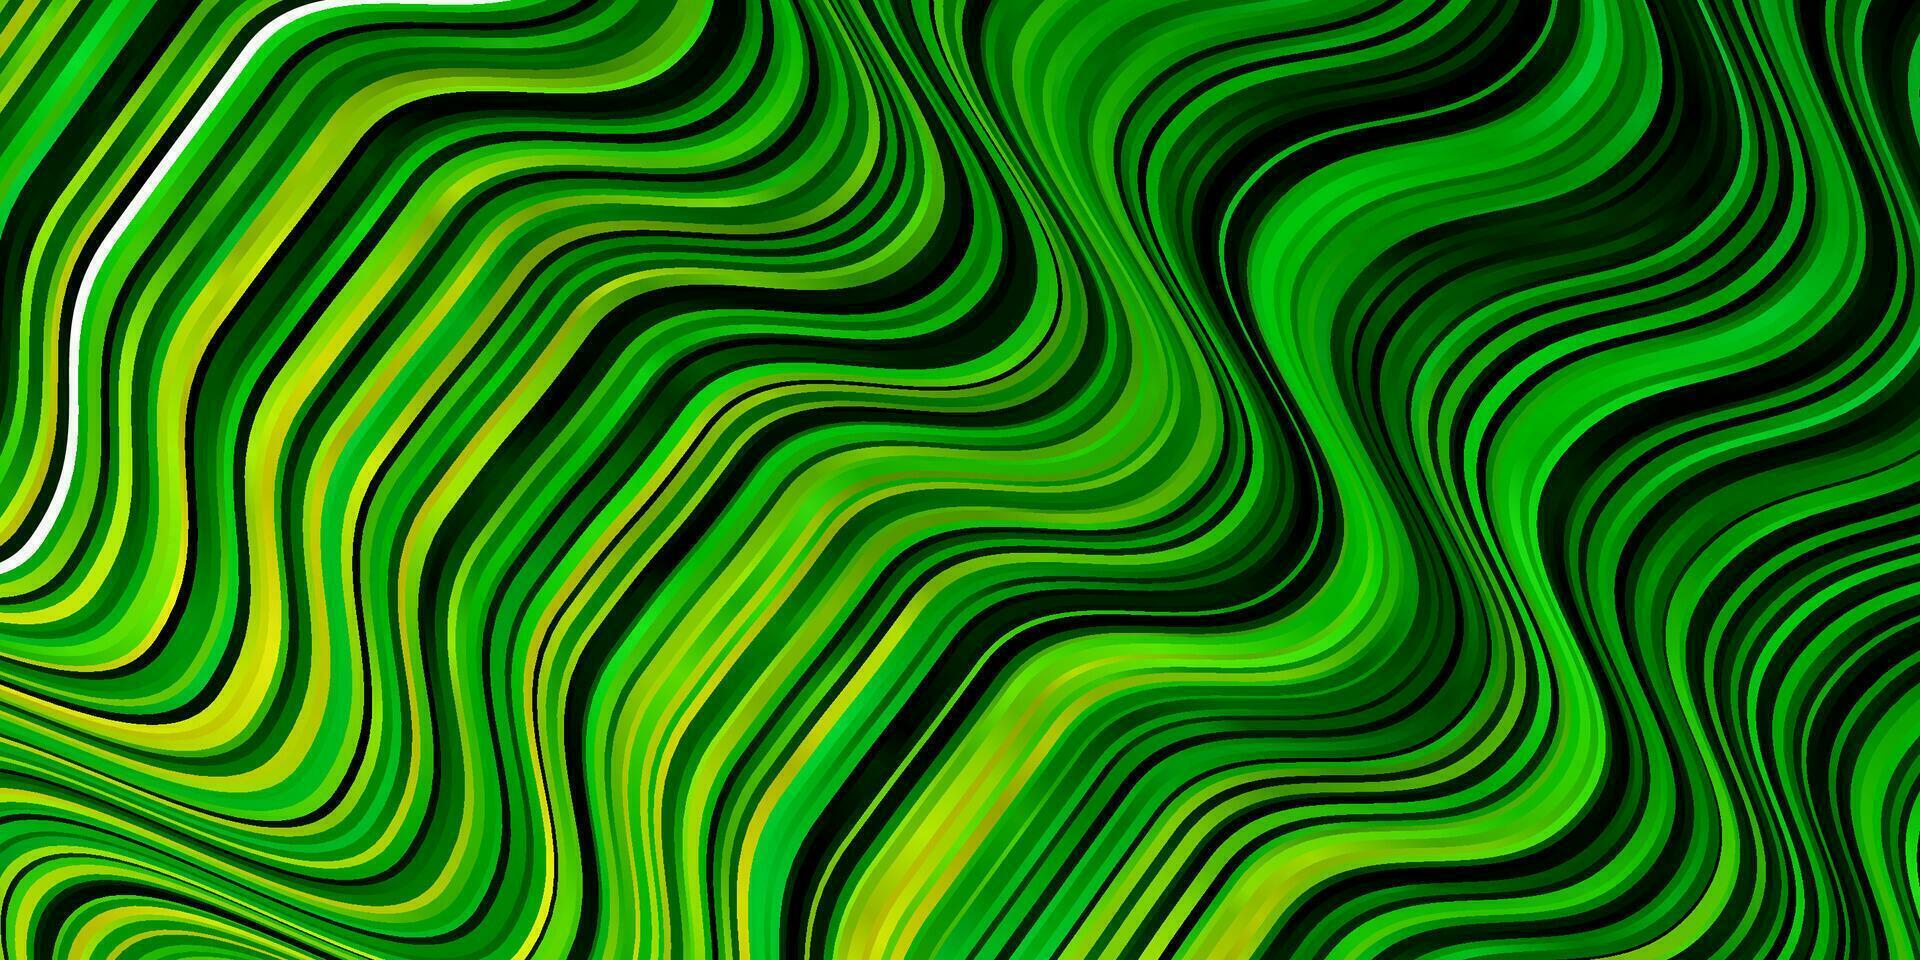 ljusgrön, gul vektorbakgrund med böjda linjer. vektor